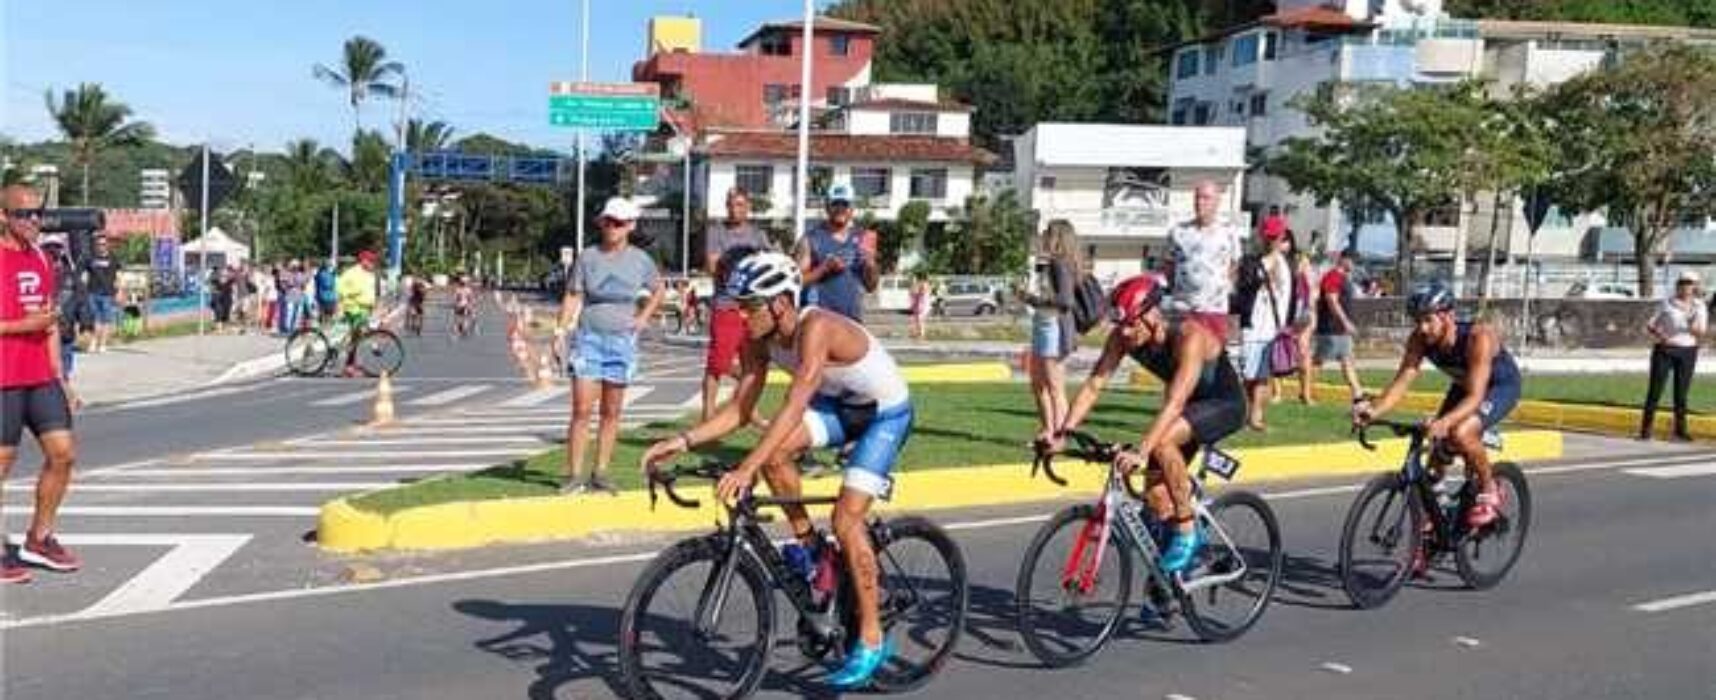 Campeonato Baiano de Triathlon reúne 150 atletas em circuito montado no Centro Histórico de Ilhéus